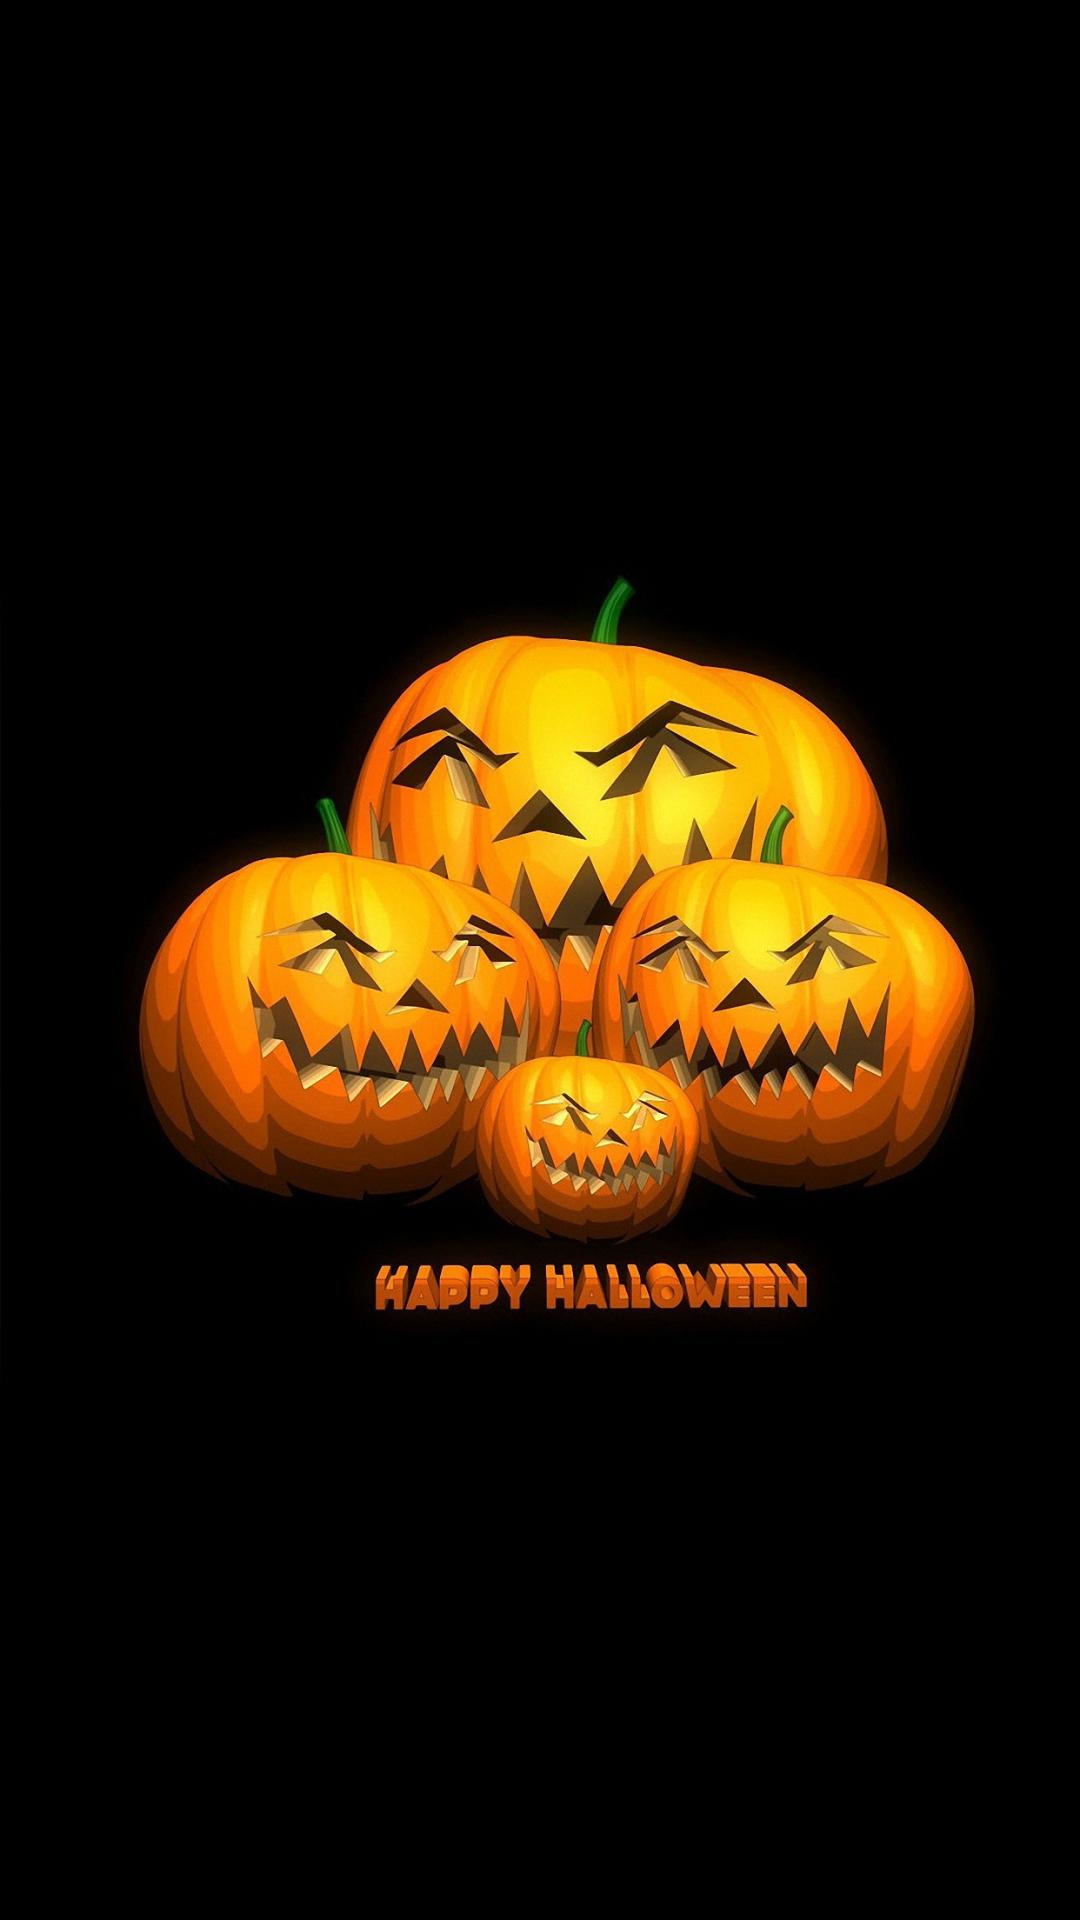 Happy Halloween iPhone 6s Wallpaper HD